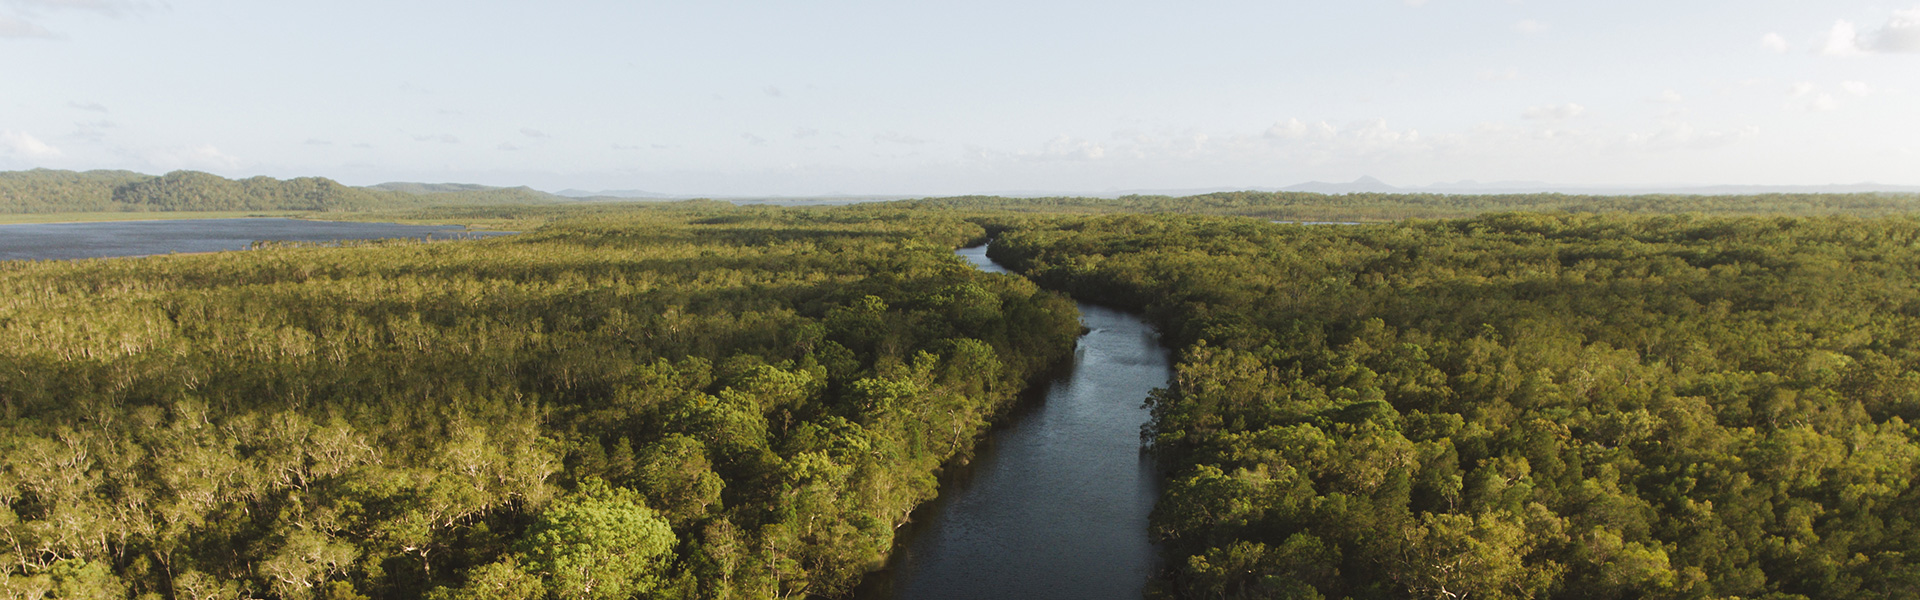 <p>Noosa Everglades</p>
